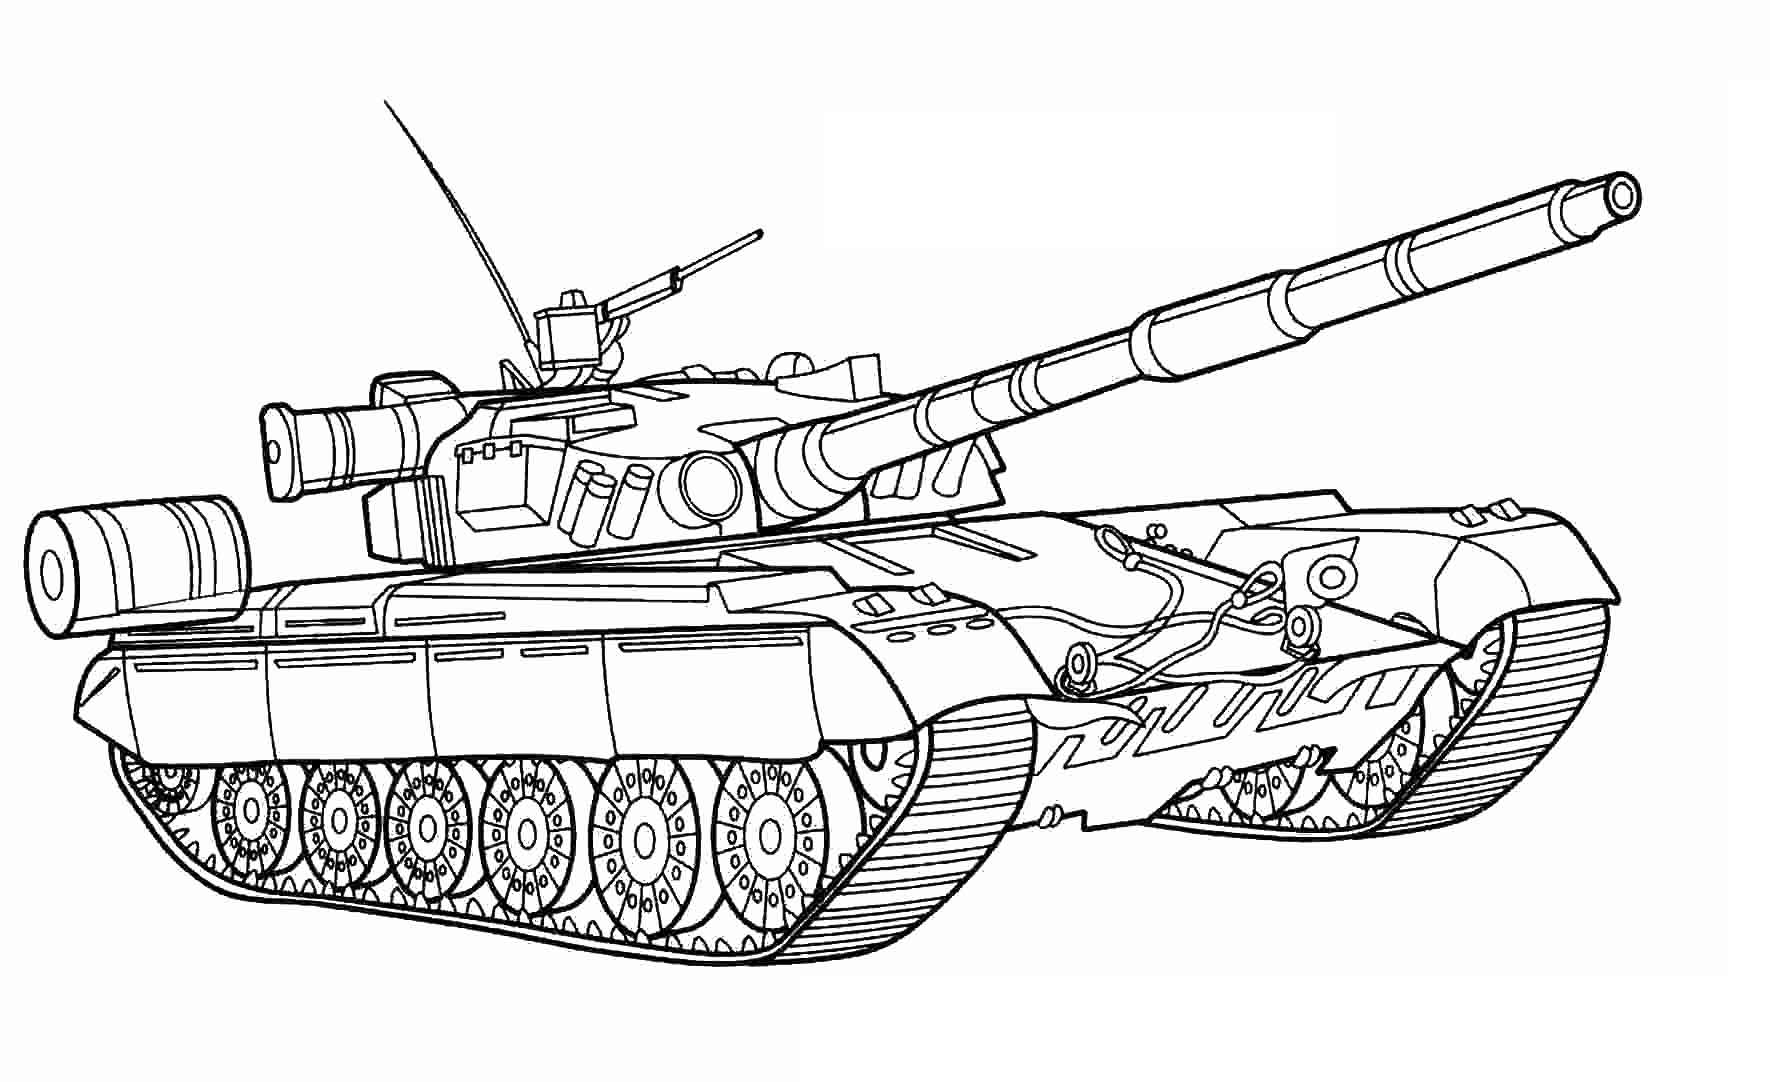 Привлекательная раскраска танков для детей 4-5 лет